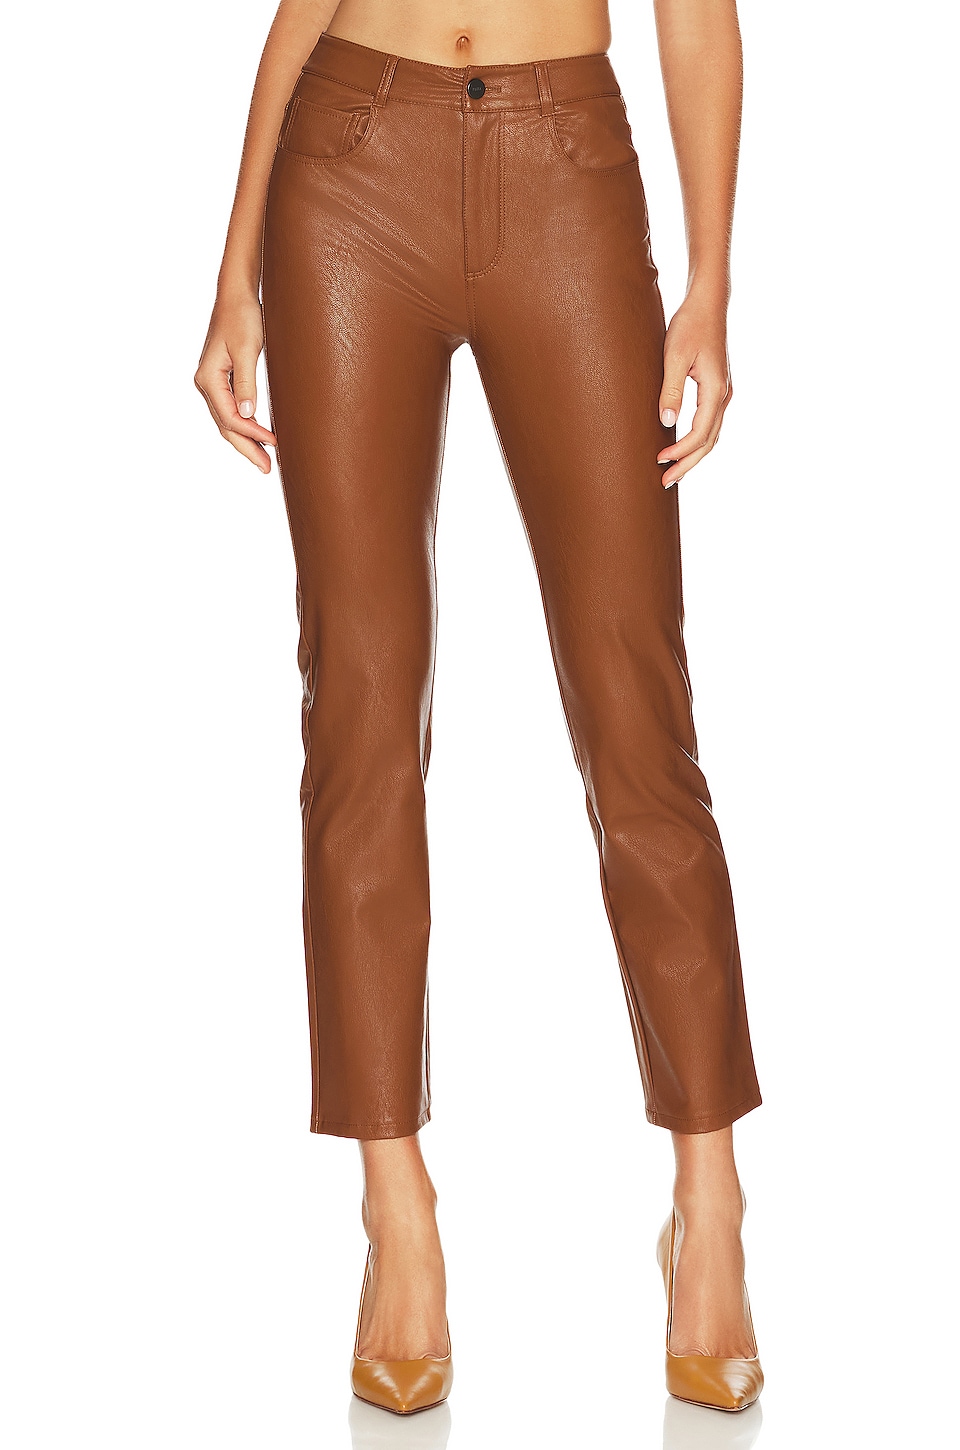 chestnut faux leather pants